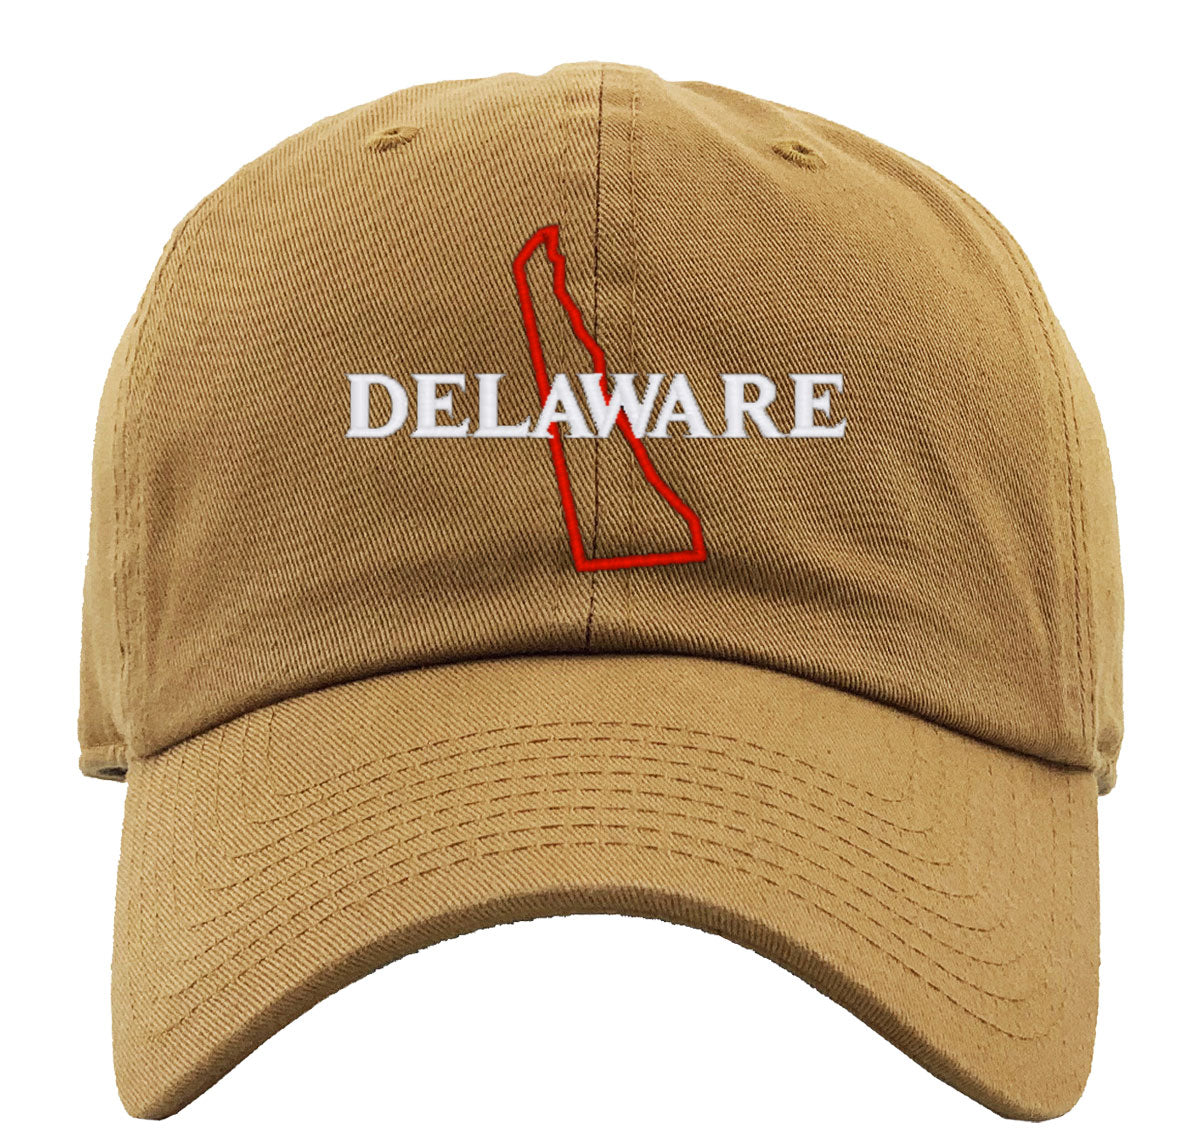 Delaware Premium Baseball Cap